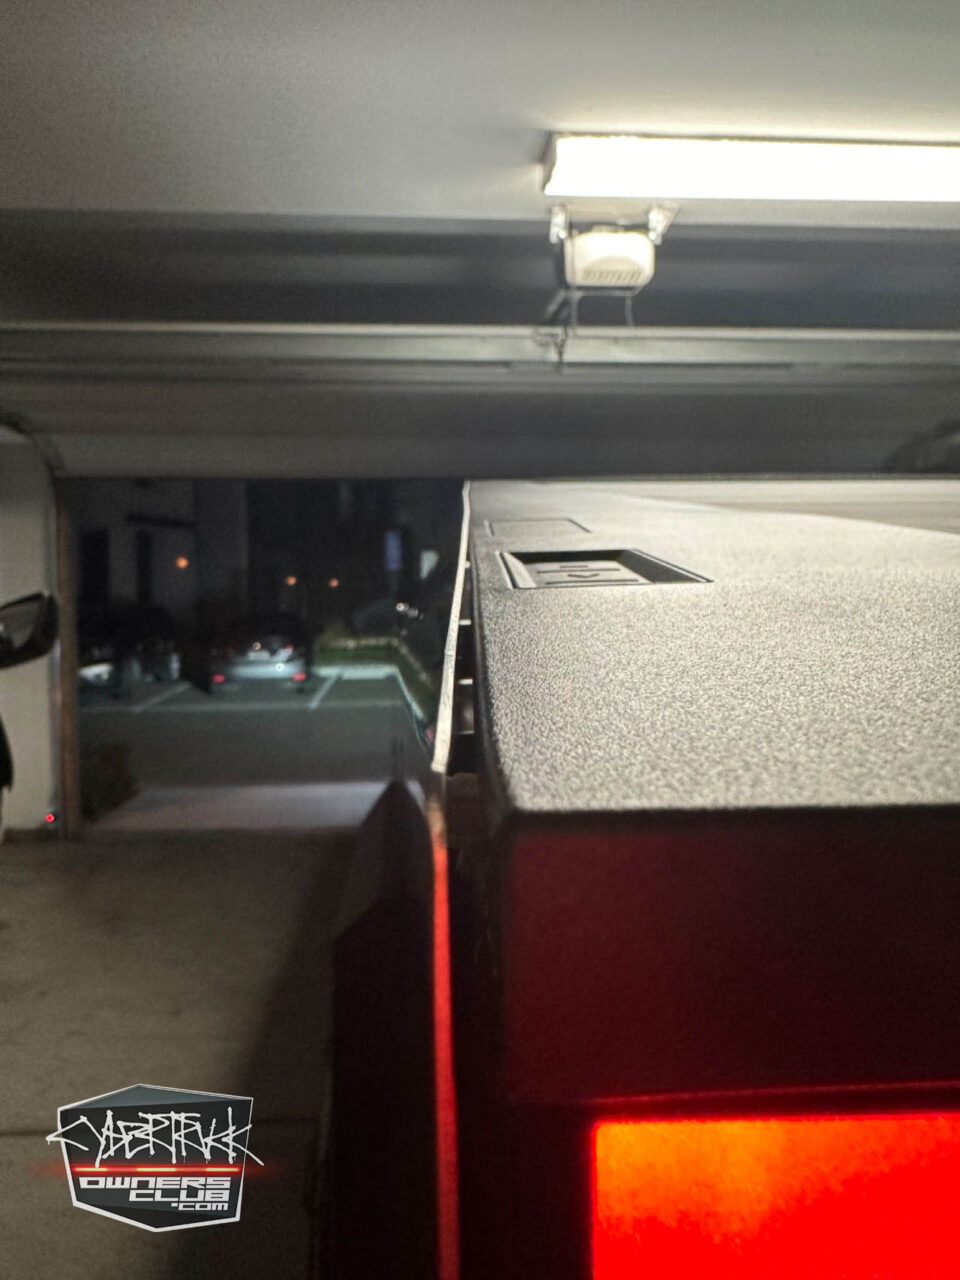 Zdjęcie z perspektywy wnętrza garażu, pokazujące fragment czerwonego tylnego światła samochodu i górną część otwartej garażowej bramy, przez którą widać parkujące na zewnątrz pojazdy; w tle świeci jasna lampa garażowa.